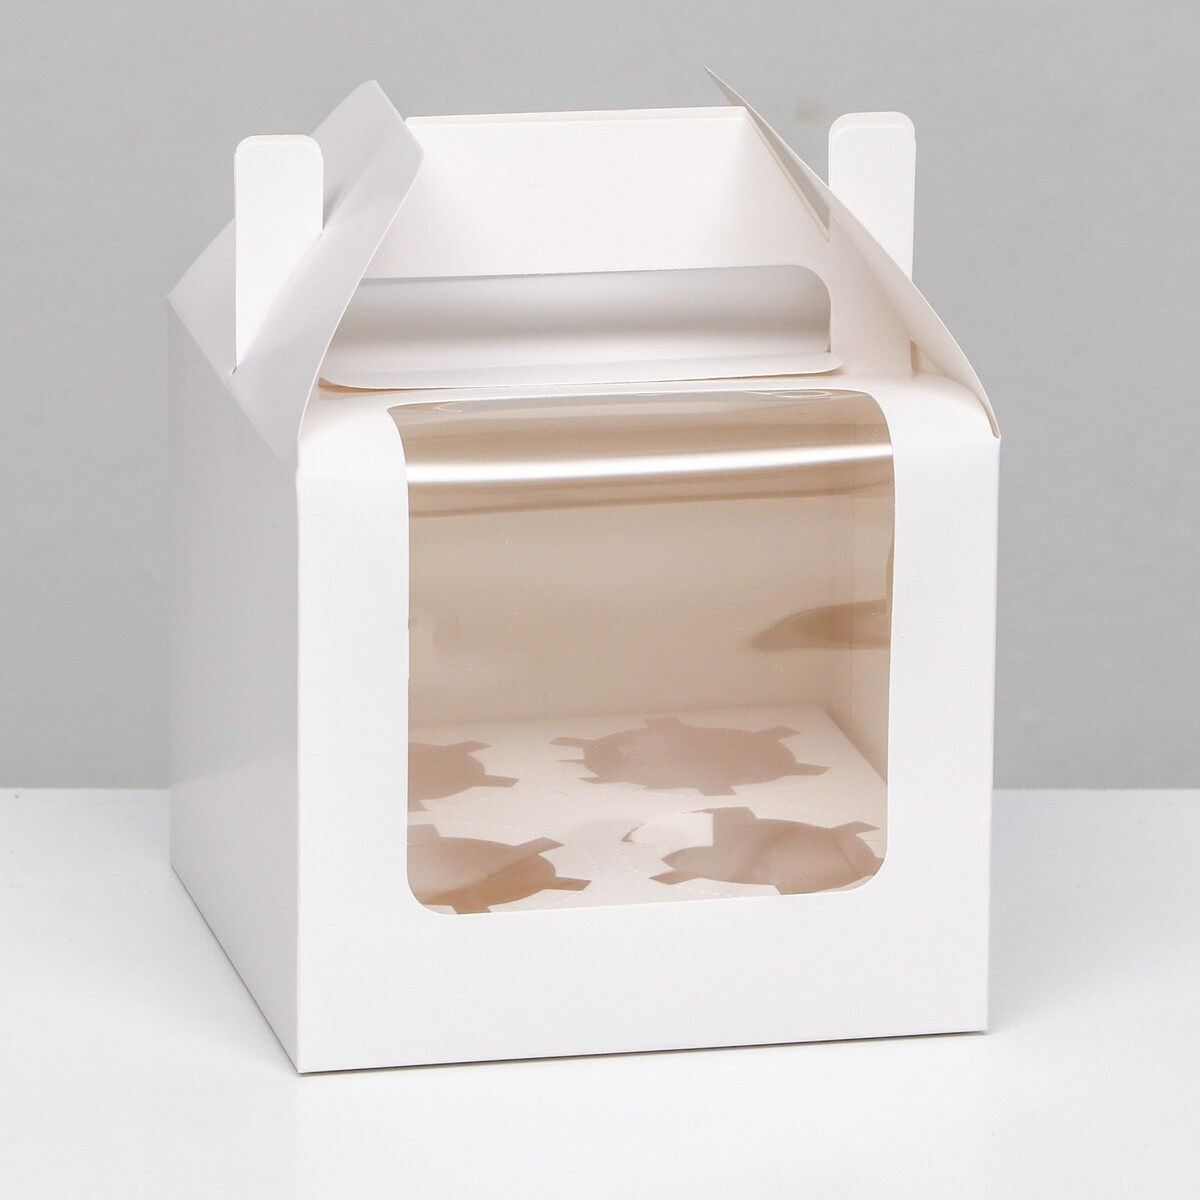 Кондитерская складная коробка для 4 капкейков, белая 16 х 16 х 14 см кондитерская складная коробка для 6 капкейков белая 23 5 х 16 х 14 см